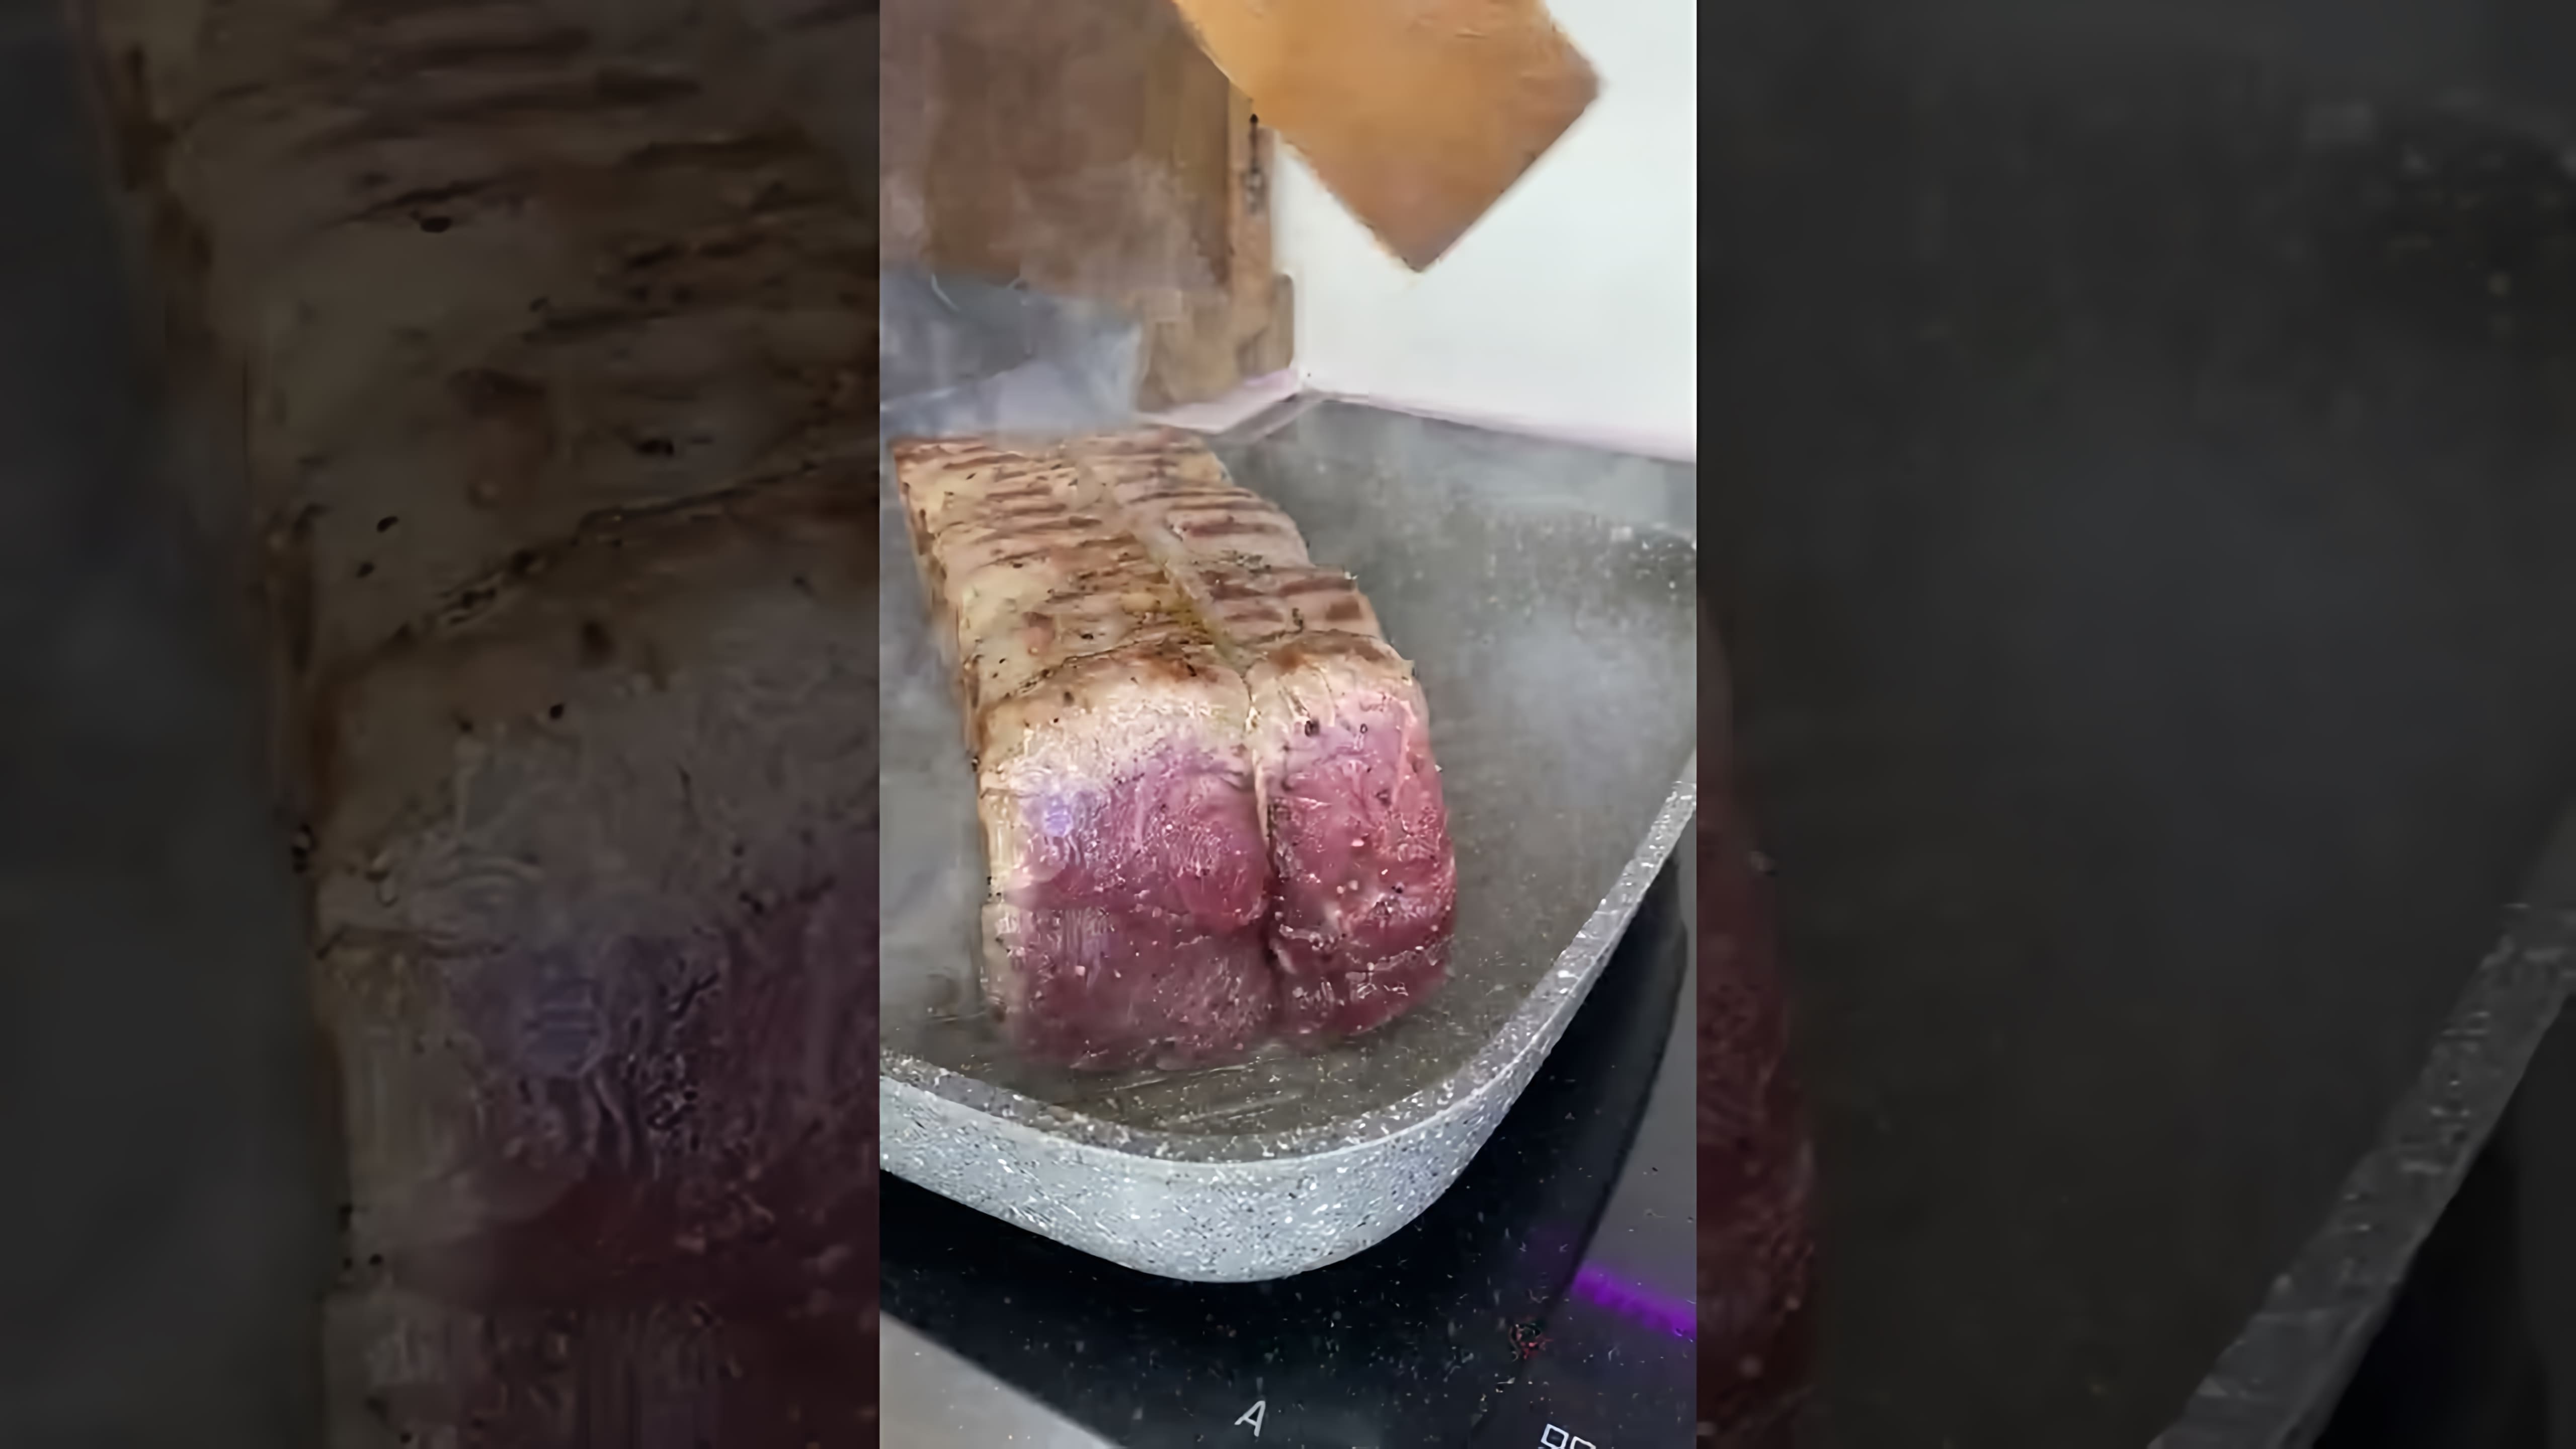 В этом видео демонстрируется процесс приготовления ростбифа - запеченного куска говядины